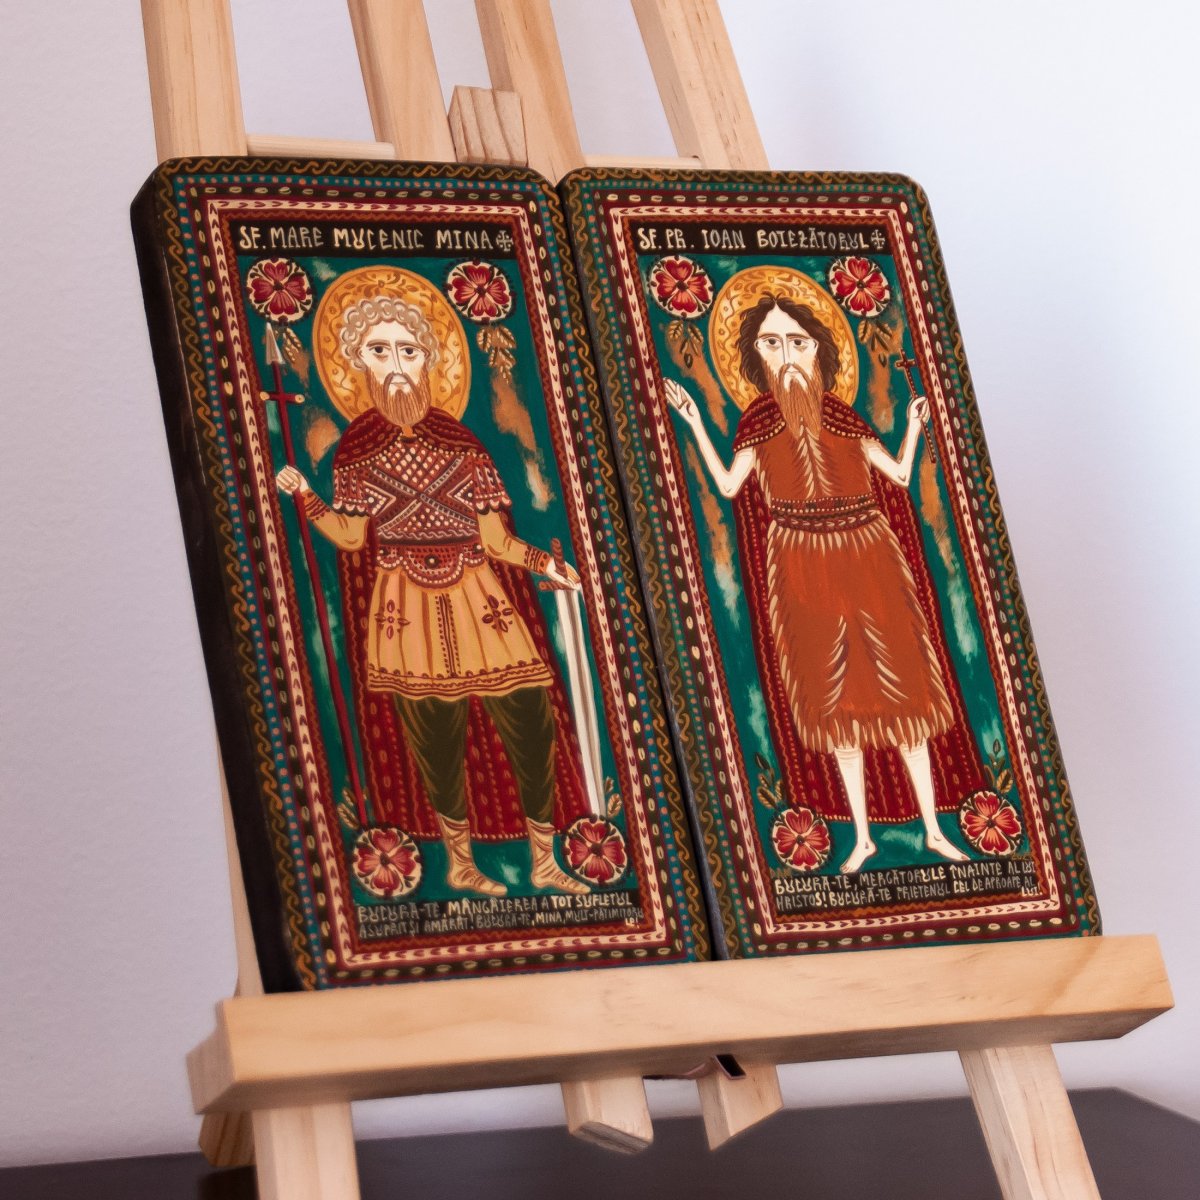 Icoană pe lemn tip diptic "Sf. M. Mc. Mina și Sf. Ioan Botezătorul", 2 x 10x20cm